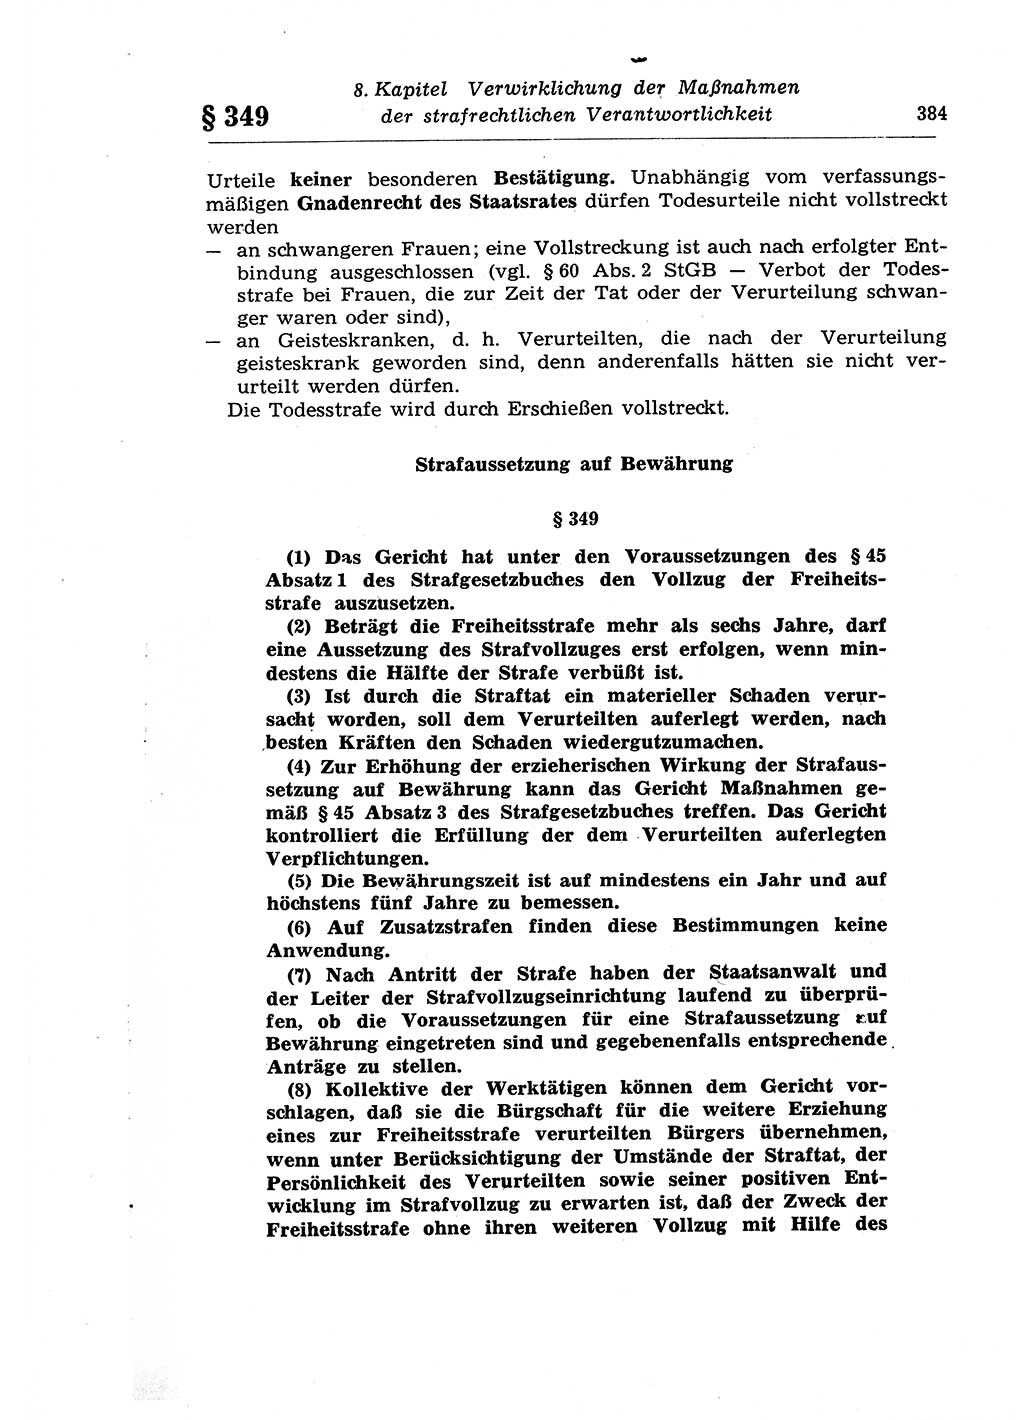 Strafprozeßrecht der DDR (Deutsche Demokratische Republik), Lehrkommentar zur Strafprozeßordnung (StPO) 1968, Seite 384 (Strafprozeßr. DDR Lehrkomm. StPO 19688, S. 384)